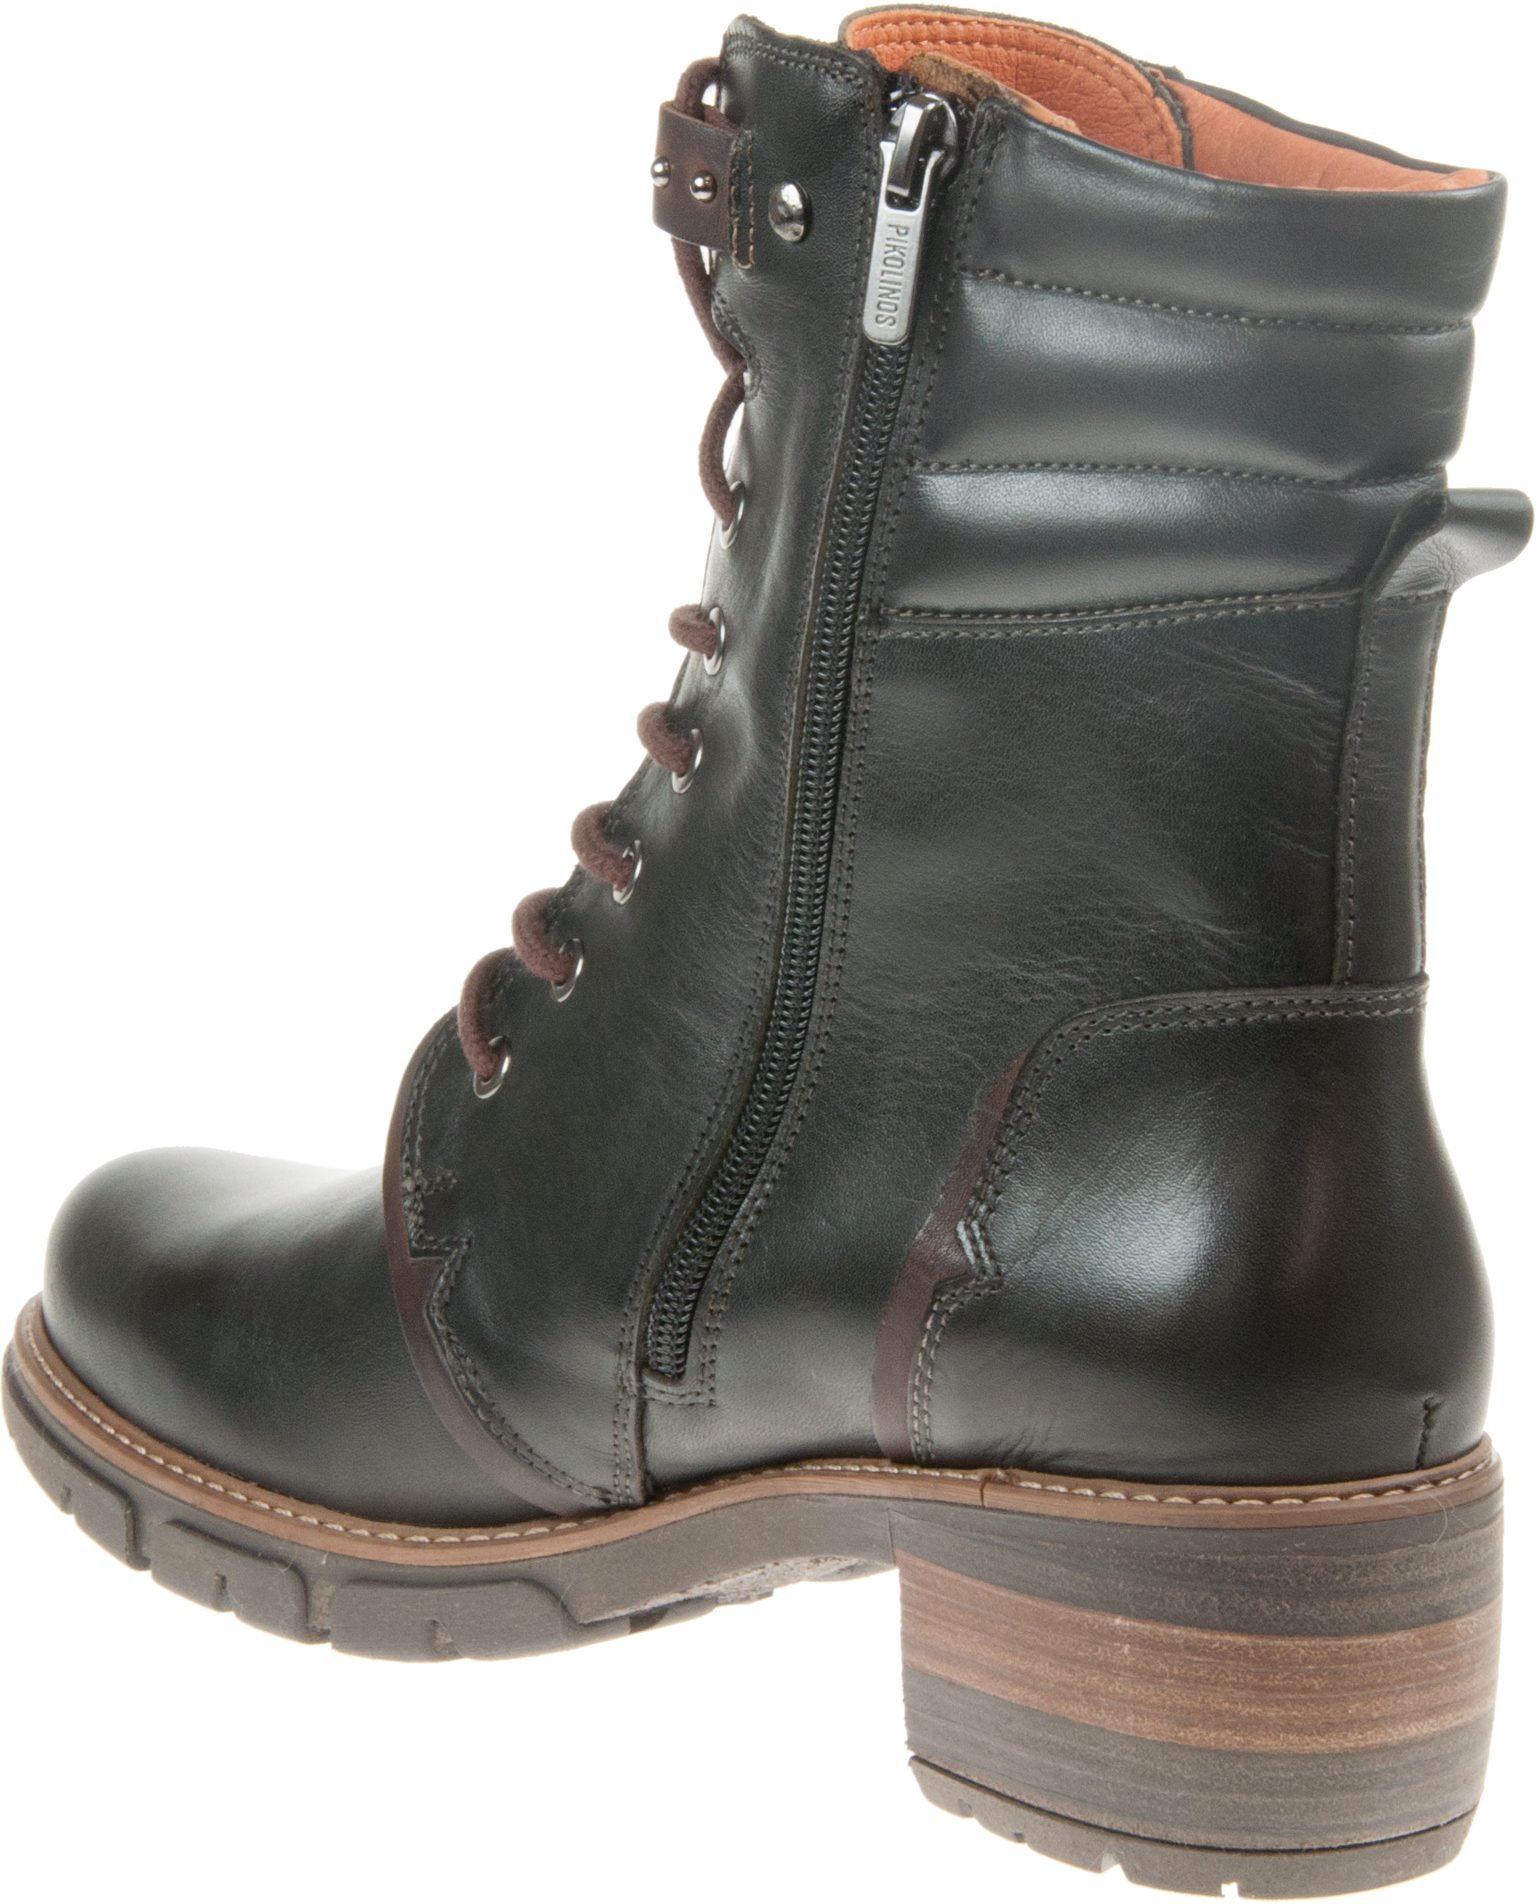 Pikolinos San Sebastia 8812 Black W1T-8812 000 - Ankle Boots ...